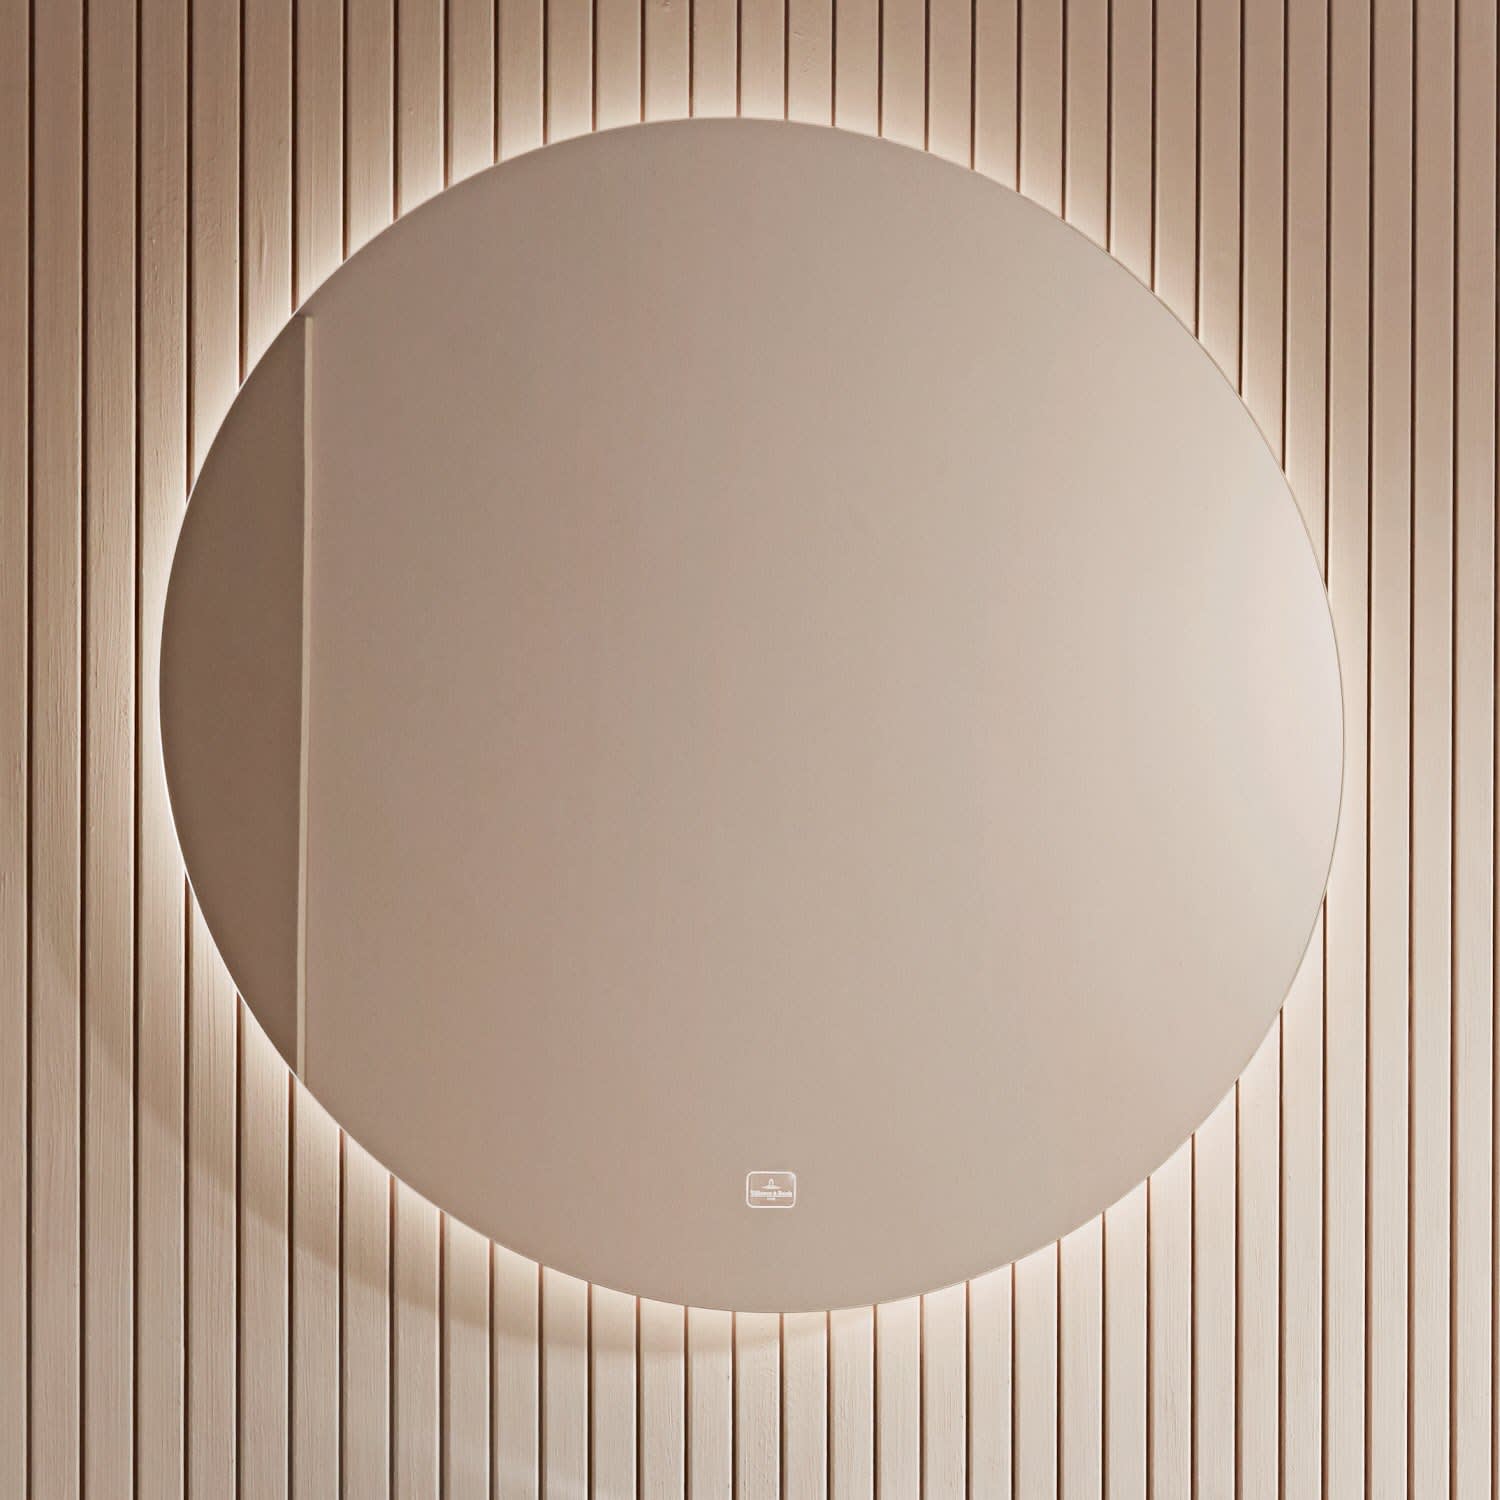 VISO rund Spiegel mit LED Beleuchtung und Regal, ø 80cm, weiß matt